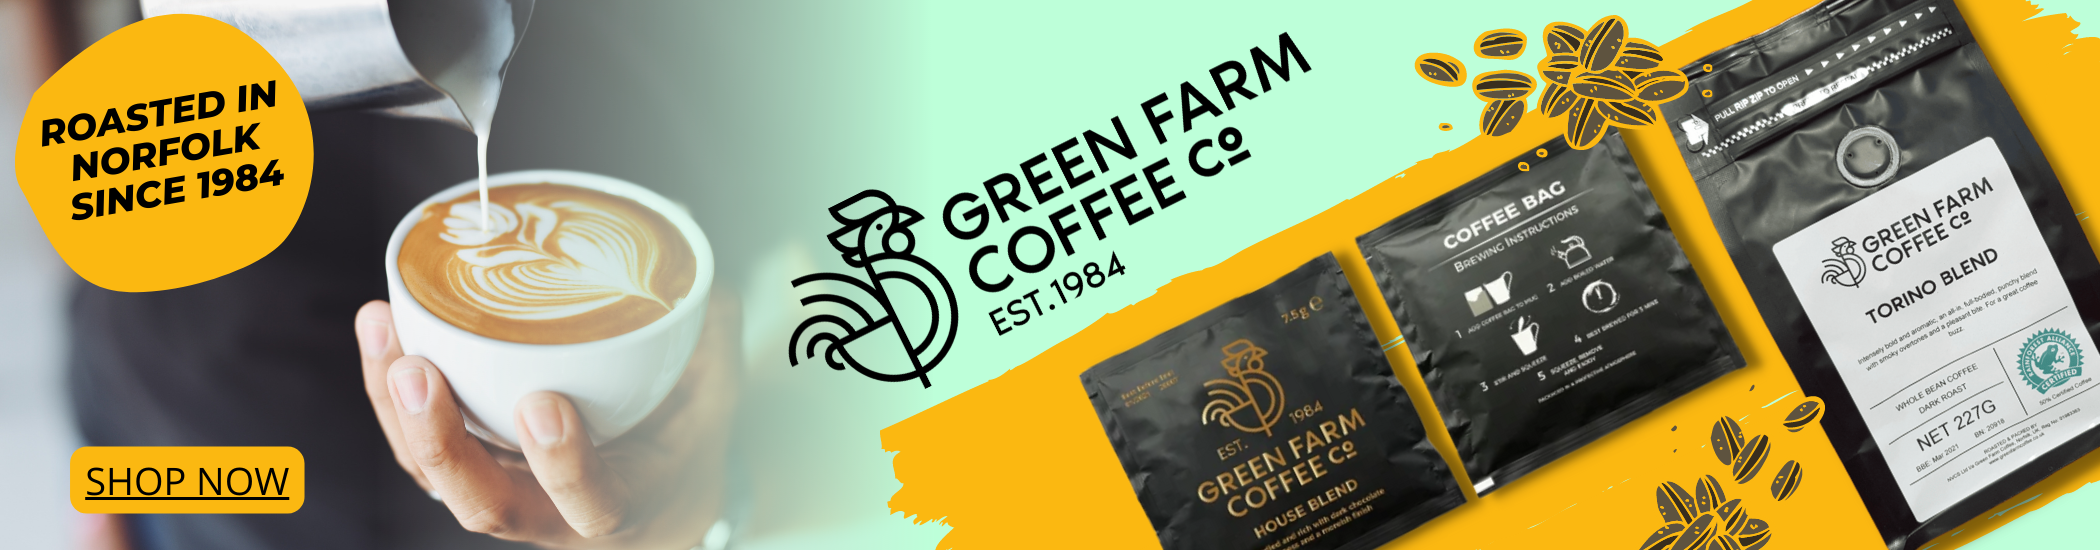 Green Farm Coffee roasted in Norfolk 